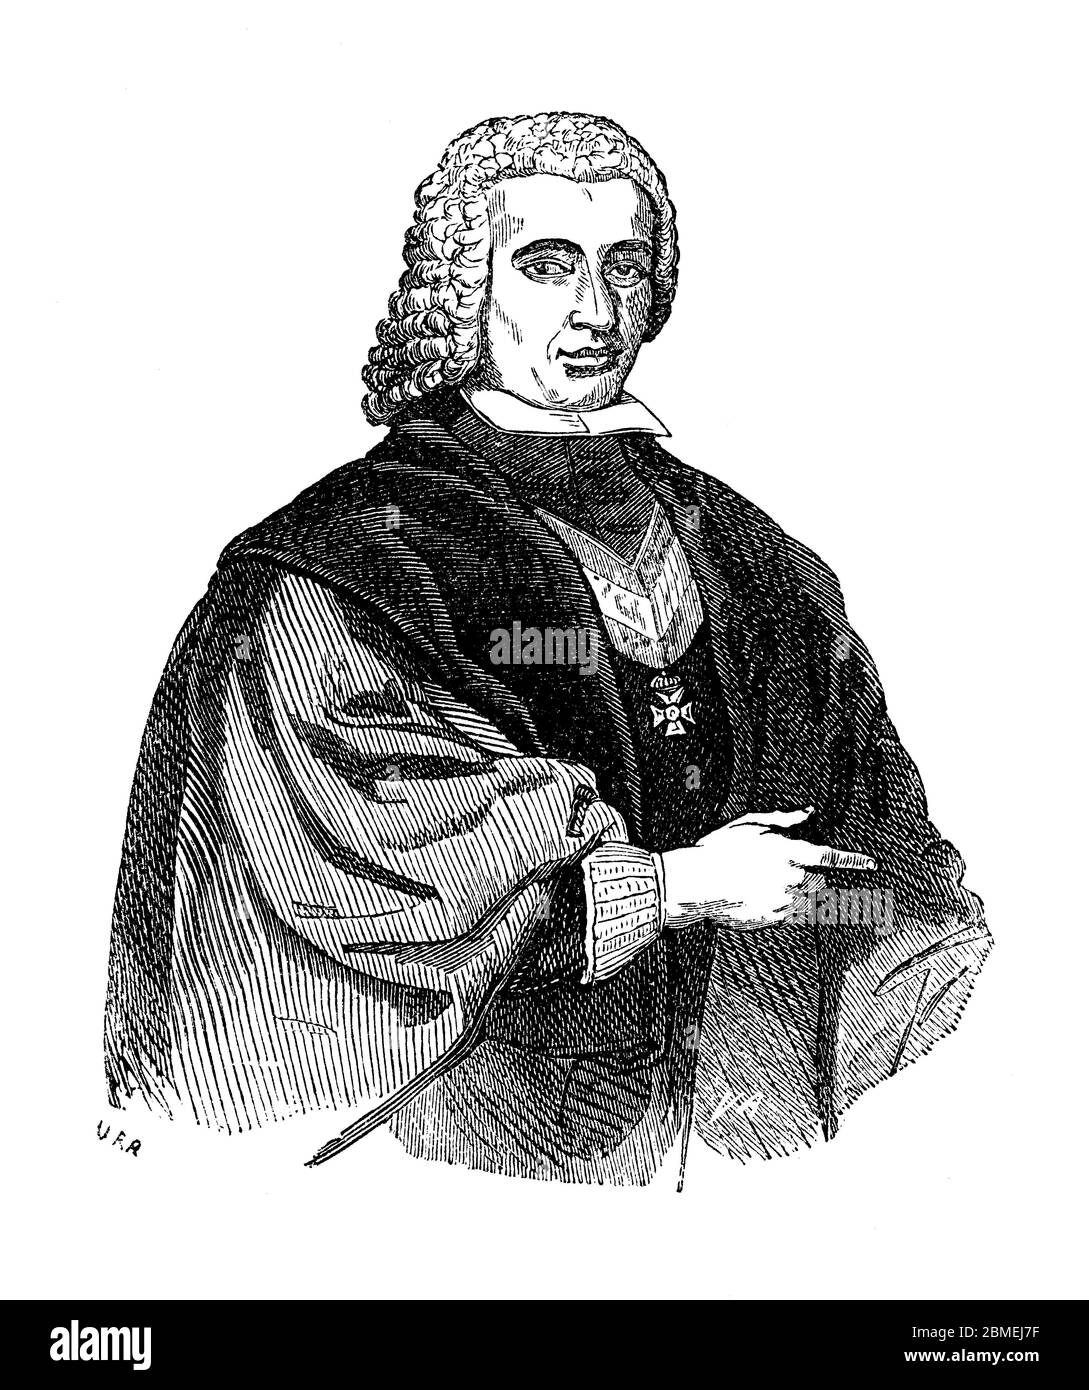 Pedro Rodríguez Campomanes (1723-1802), político, economista e historiador español. Stock Photo